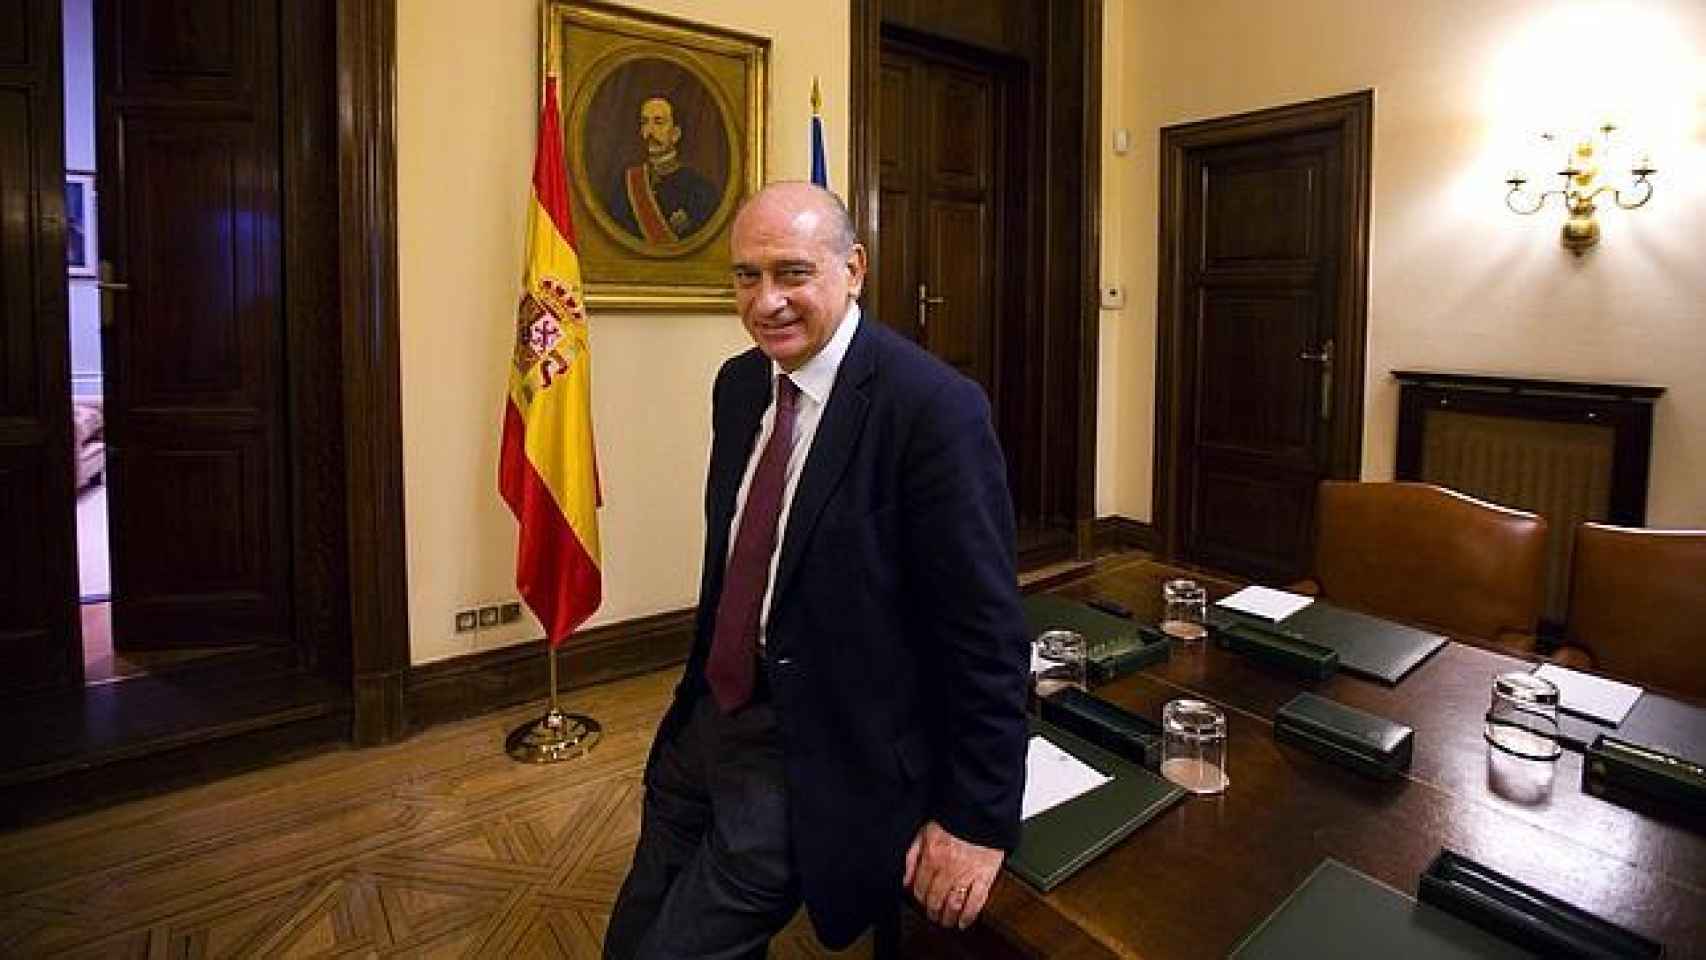 Jorge Fernández Díaz en su despacho. Al fondo, un retrato de Eduardo Dato, ministro de la Gobernación durante la regencia de María Cristina.